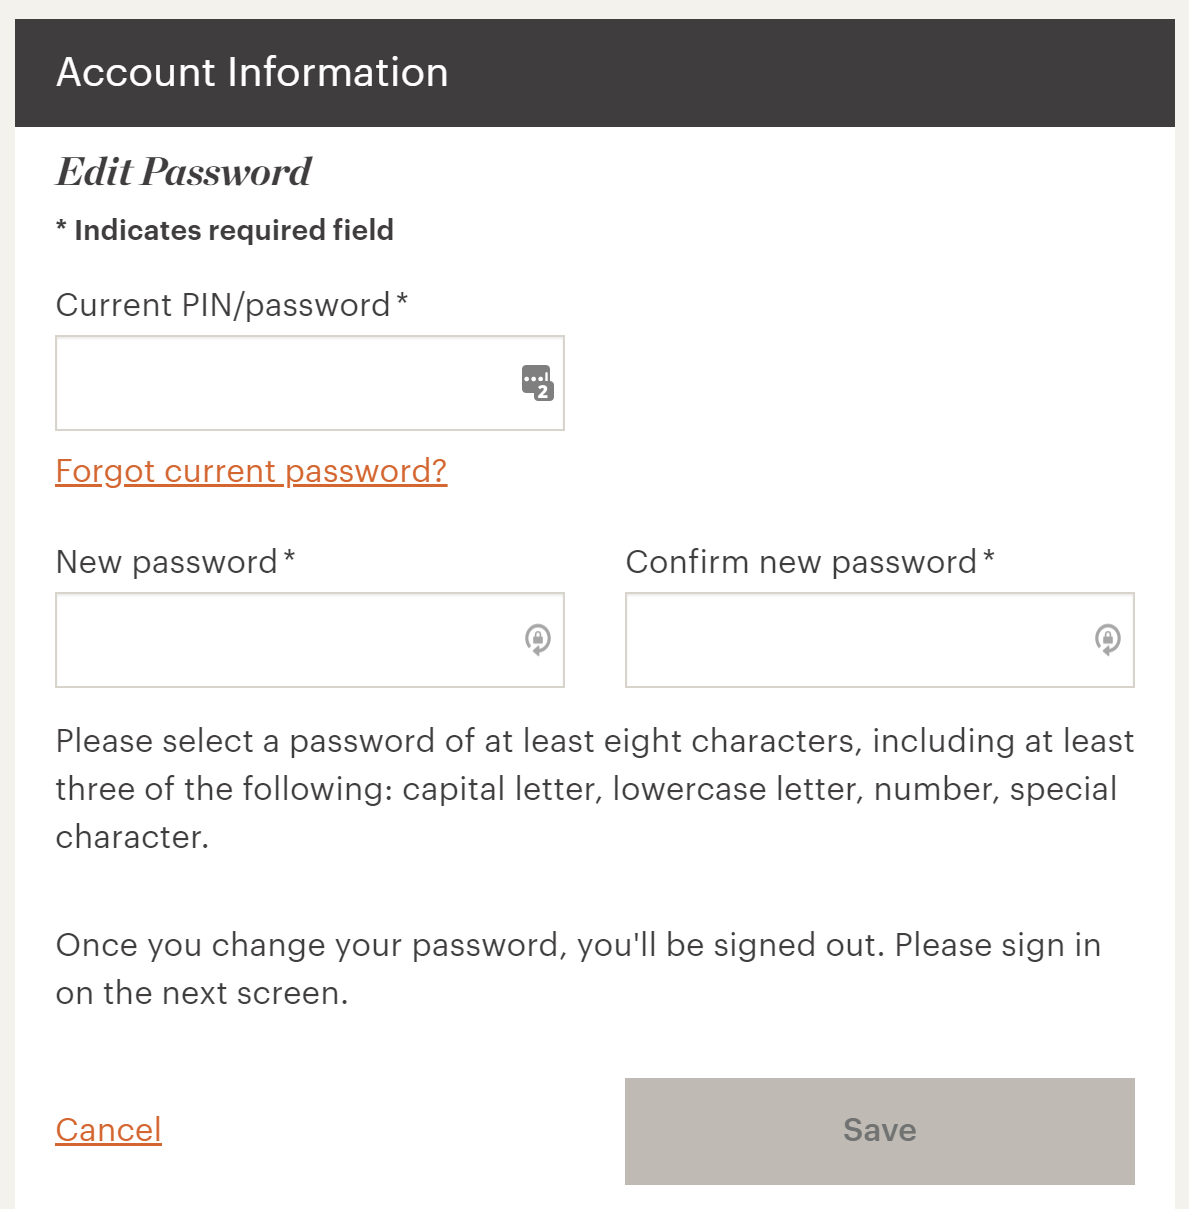 IHG password update new password